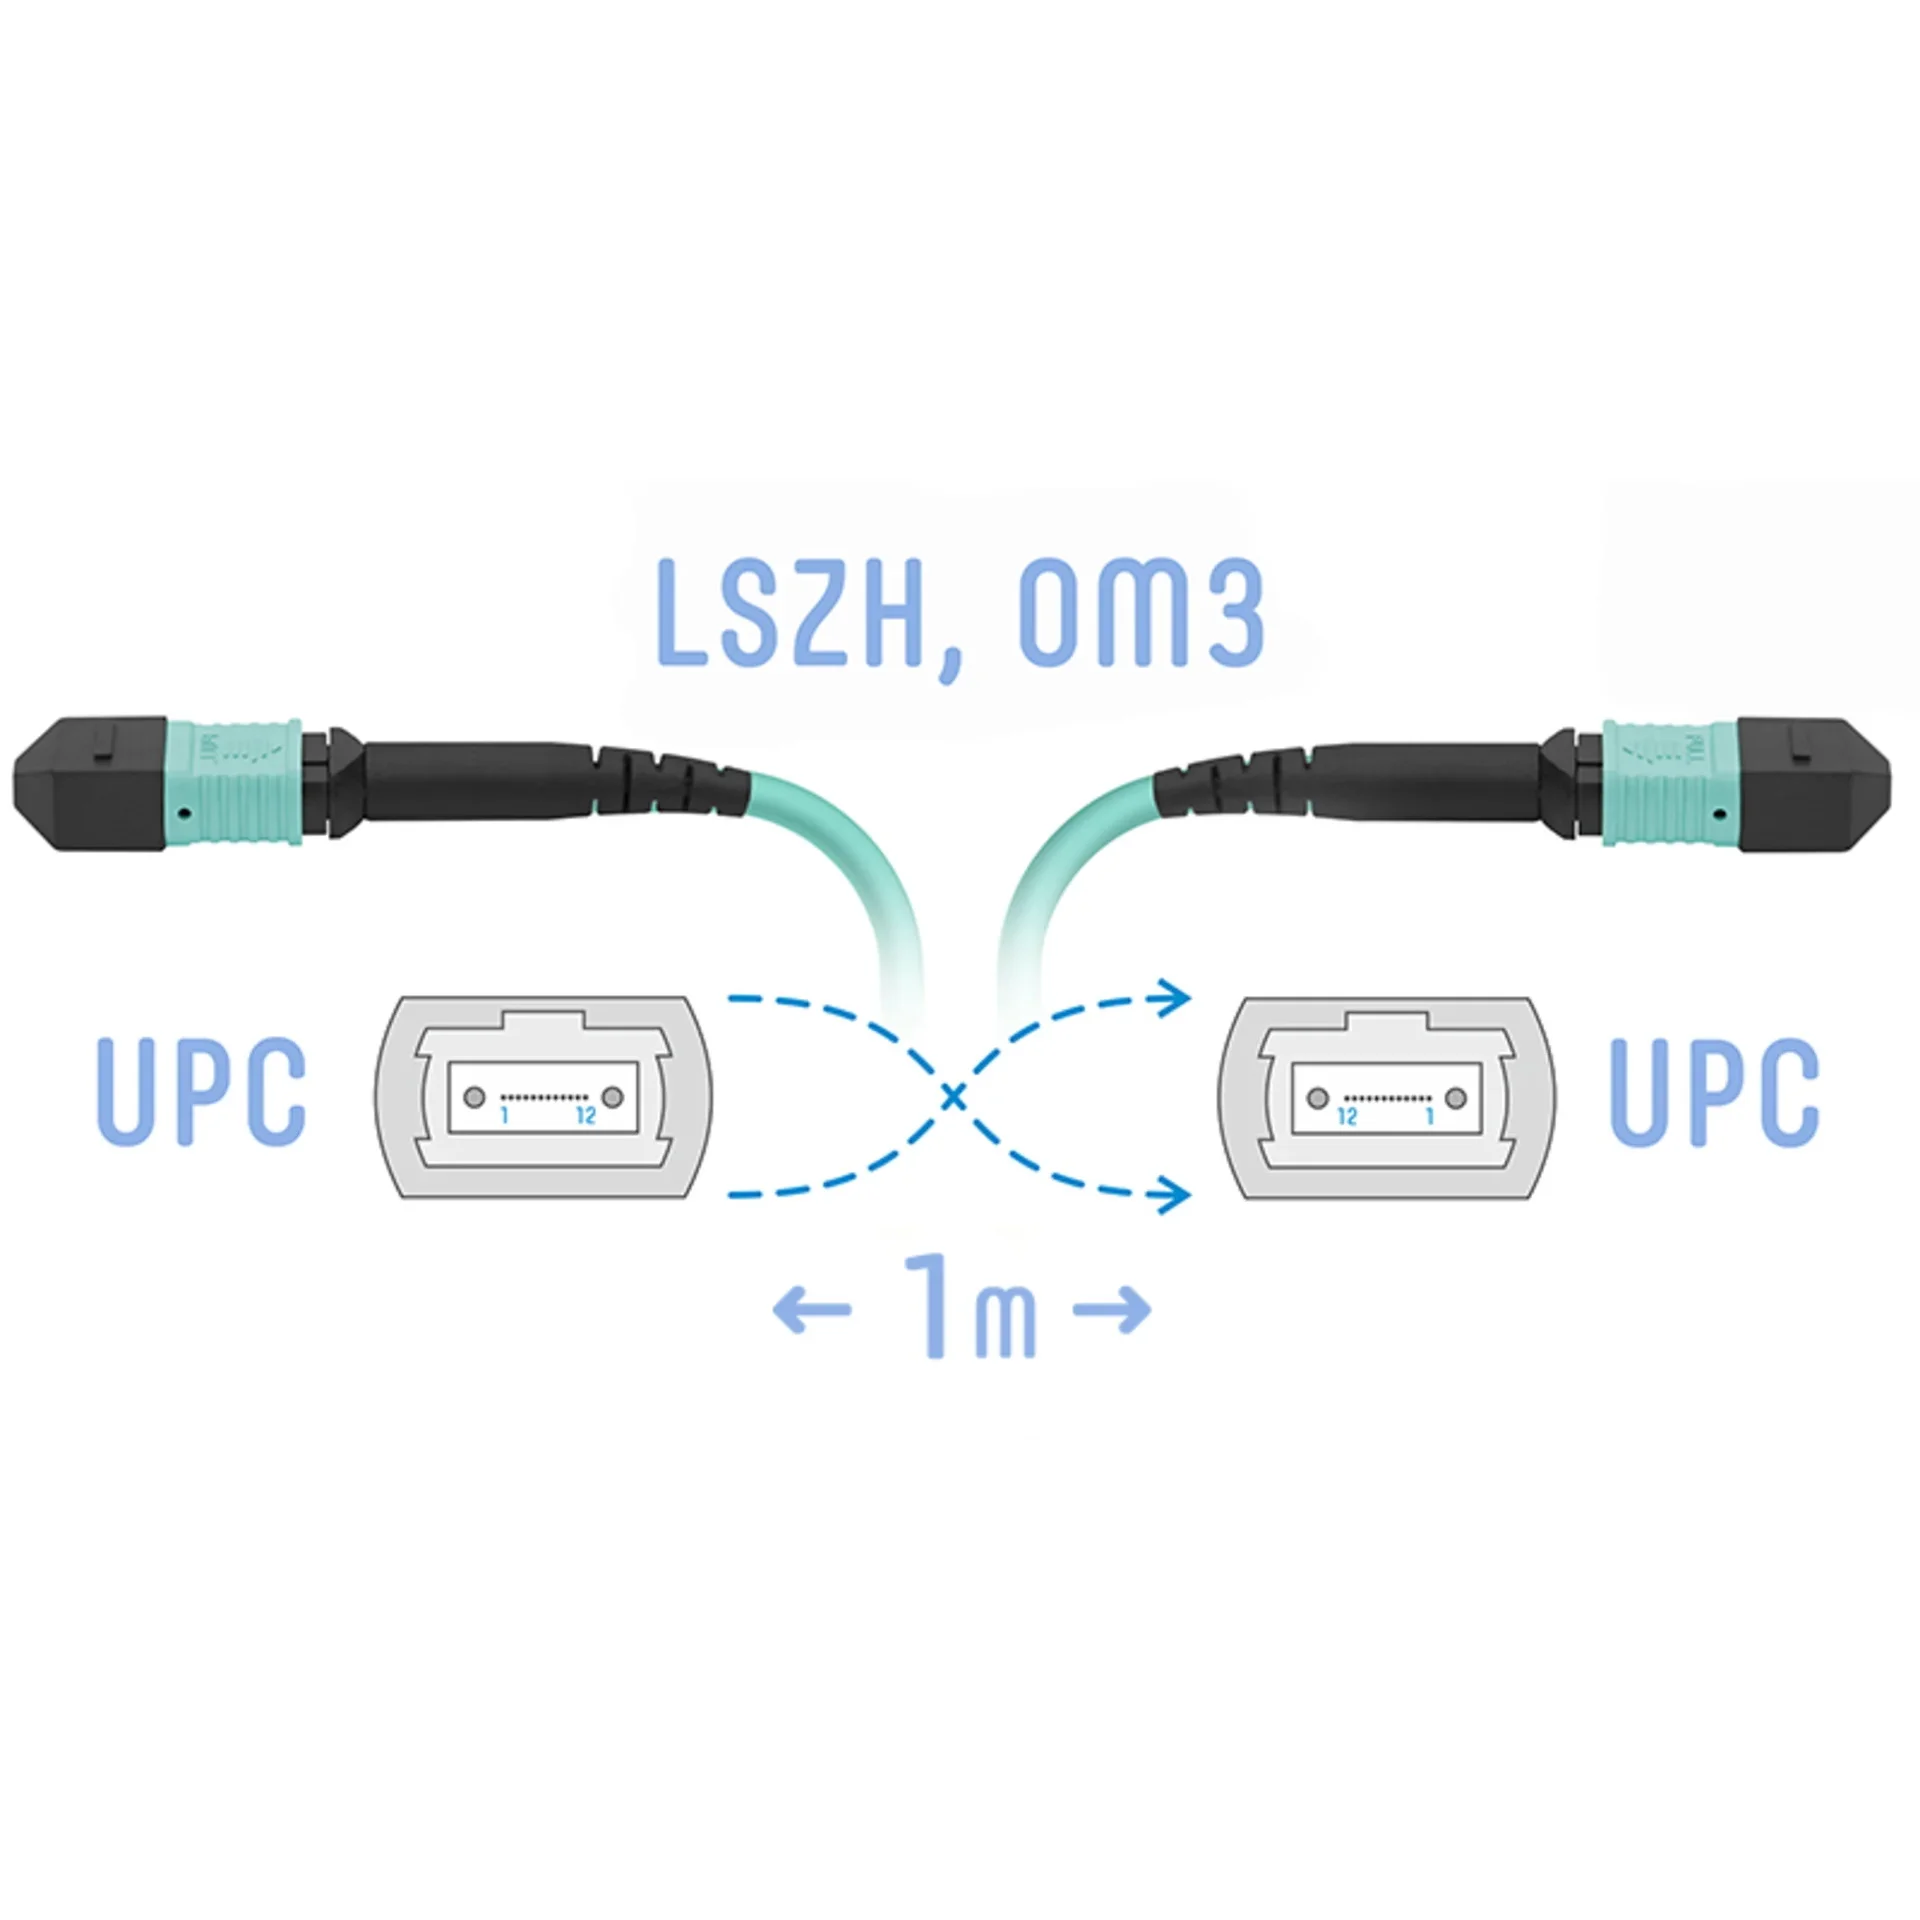 SNR-PC-MPO/UPC-MPO/UPC-FF-MM-12F-1m - Оптический патчкорд MPO/UPC - MPO/UPС, FF (Female / Female), кроссовый, MM, 12 волокон диаметром 50/125 (OM3), 1 метр купить в Казани 	Оптический разъем MPO (Multi-fiber push-on) является разумной альтернативой для кабельной инфрастру